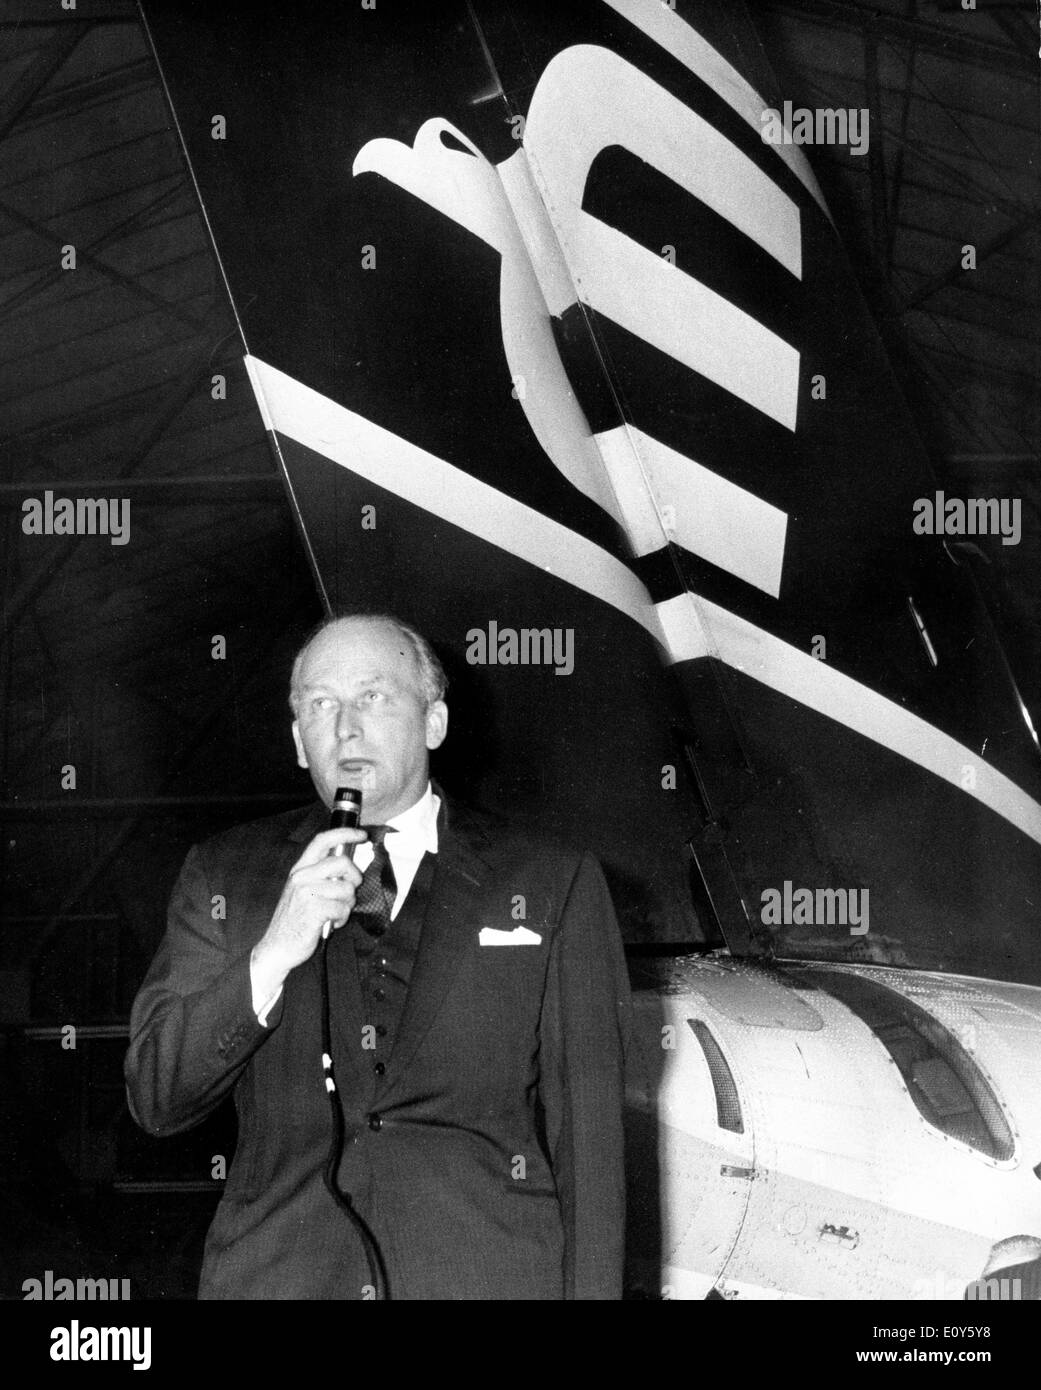 Nov 20, 1968 ; Londres, Royaume-Uni ; la dette finale d'aigle peut être plus de 4 000 livres créanciers a dit aujourd'hui. Cela a été rendu évident à la lecture des chiffres donnés par M. F.S. McWhirter, la ville comptable et le liquidateur de la compagnie aérienne, à l'assemblée des créanciers dans un hangar à l'aéroport de Heathrow. Dans l'image est M. HAROLD BAMBERG , président directeur général, fondateur de la British Eagle à l'assemblée. Banque D'Images